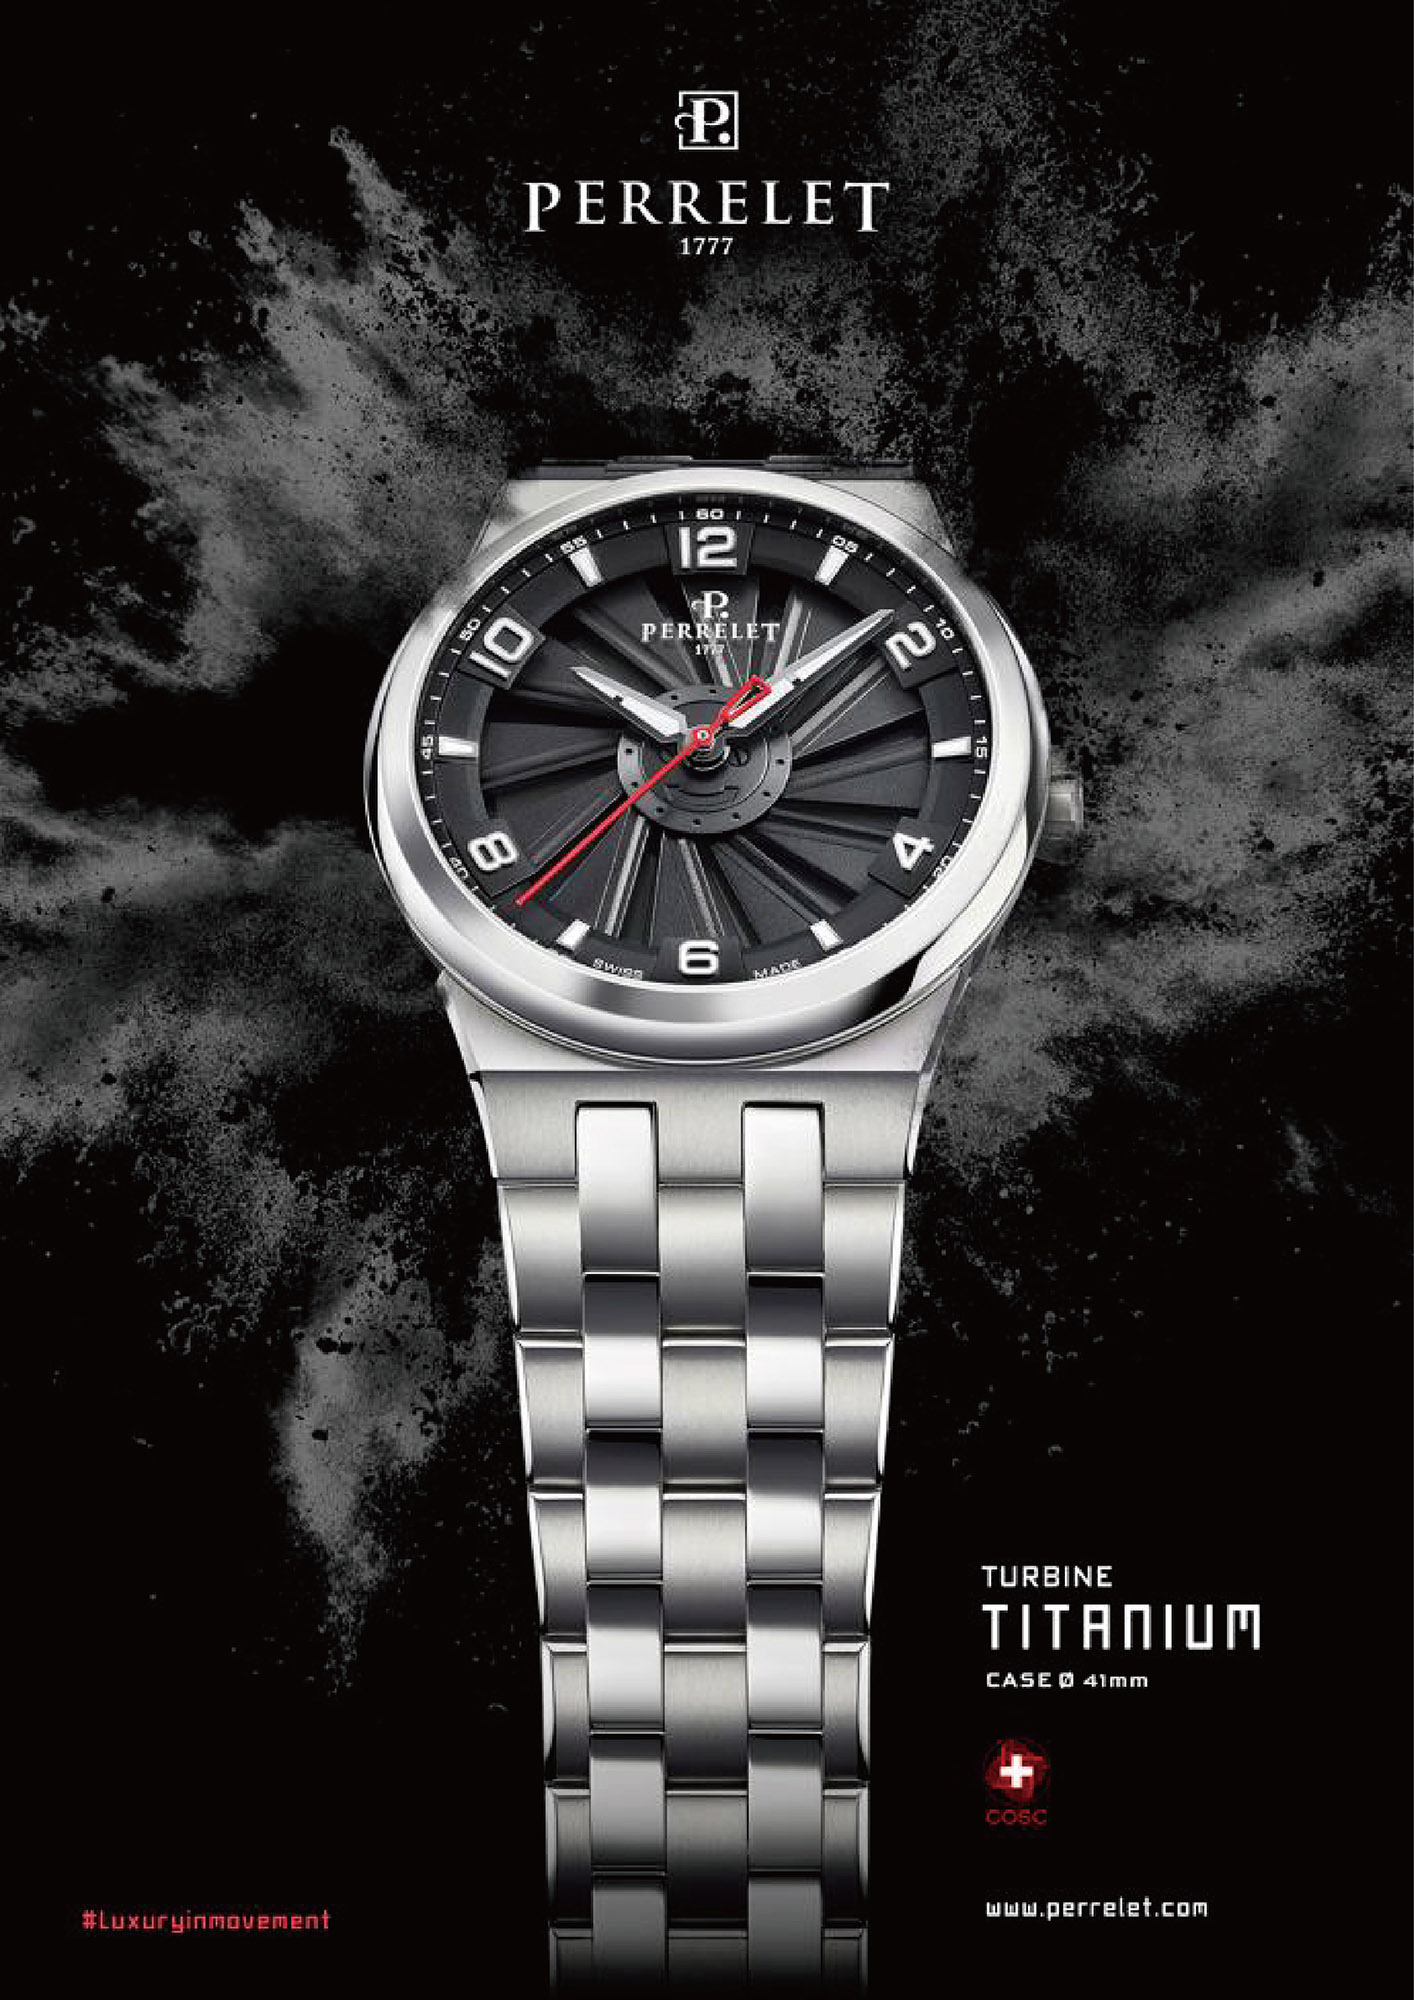 Turbine Titanium 41